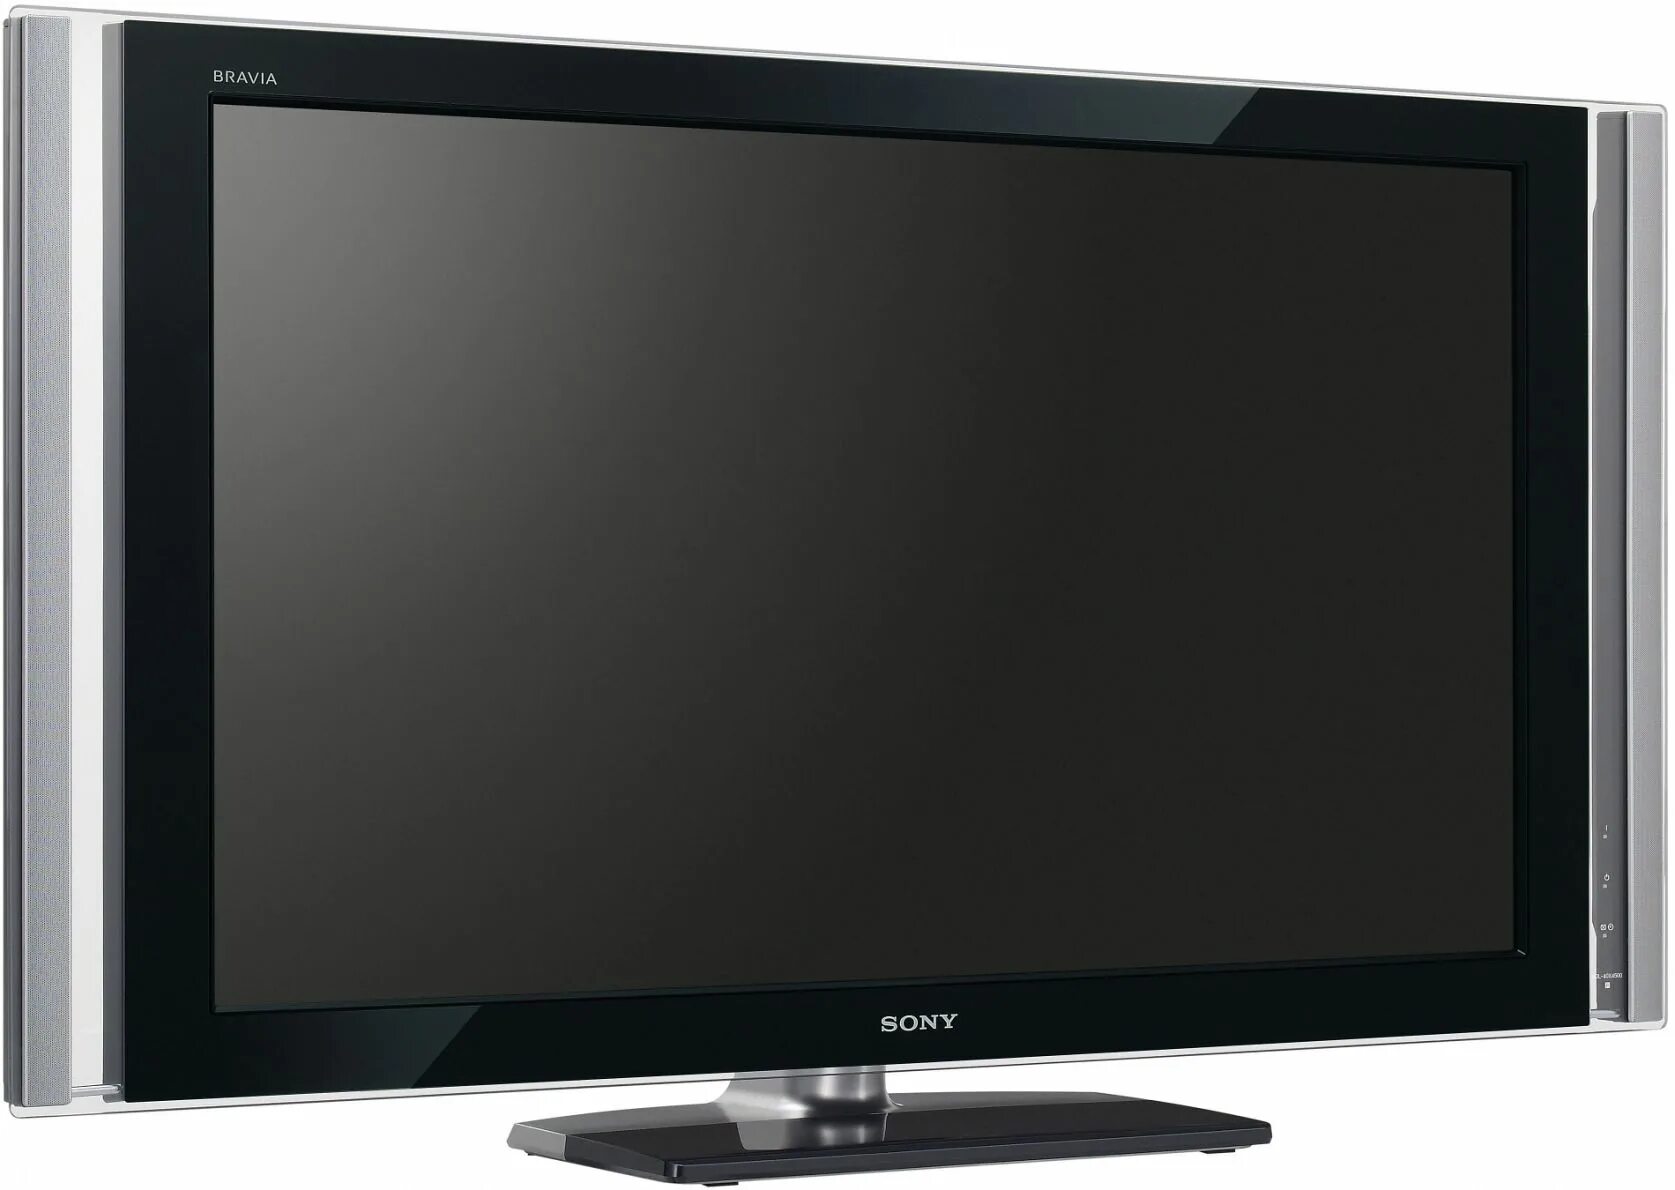 Телевизор Sony Bravia KLV-26nx400. KDL 40x4500. Sony 26nx400. Телевизор Sony KLV 26 NX 400.